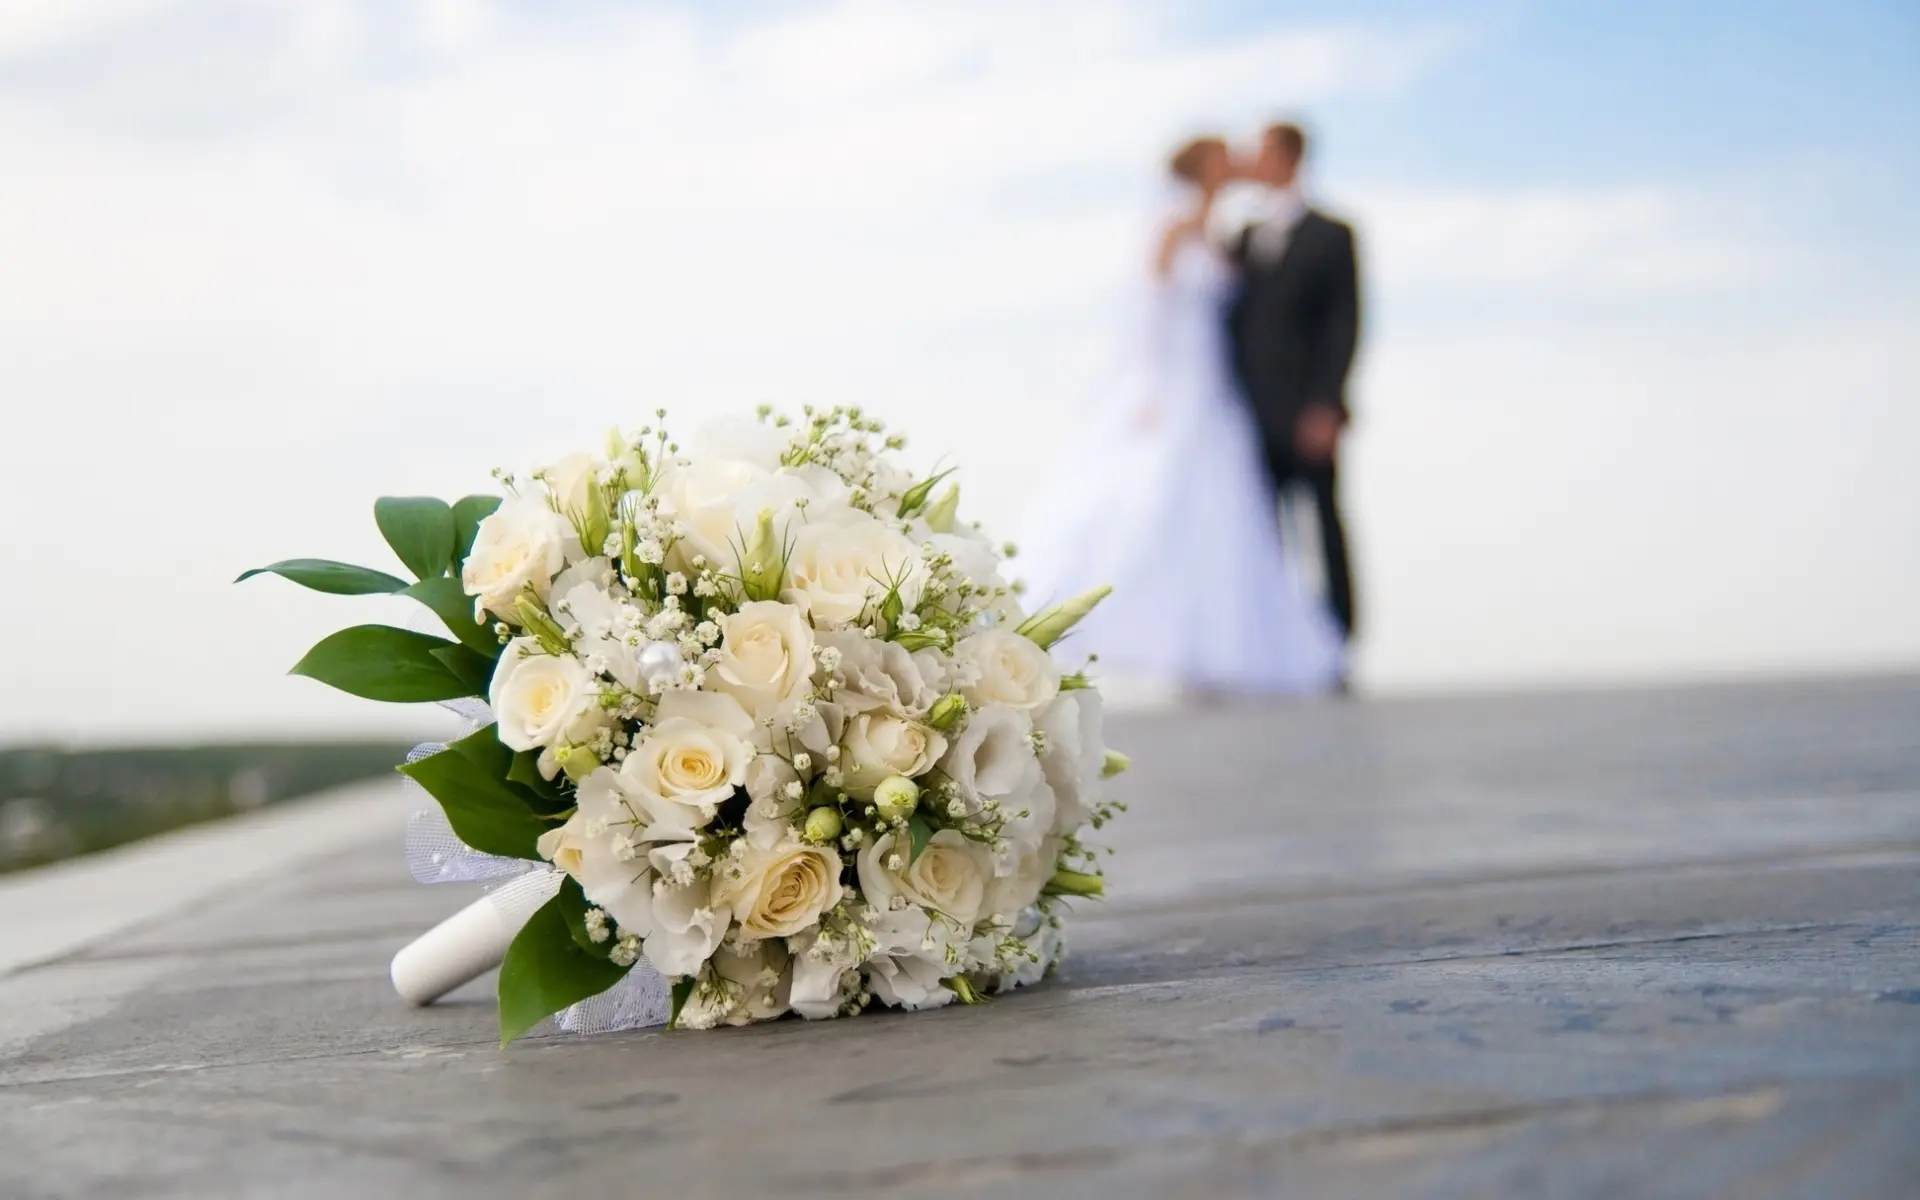 Significado do vestido branco e rituais de casamento